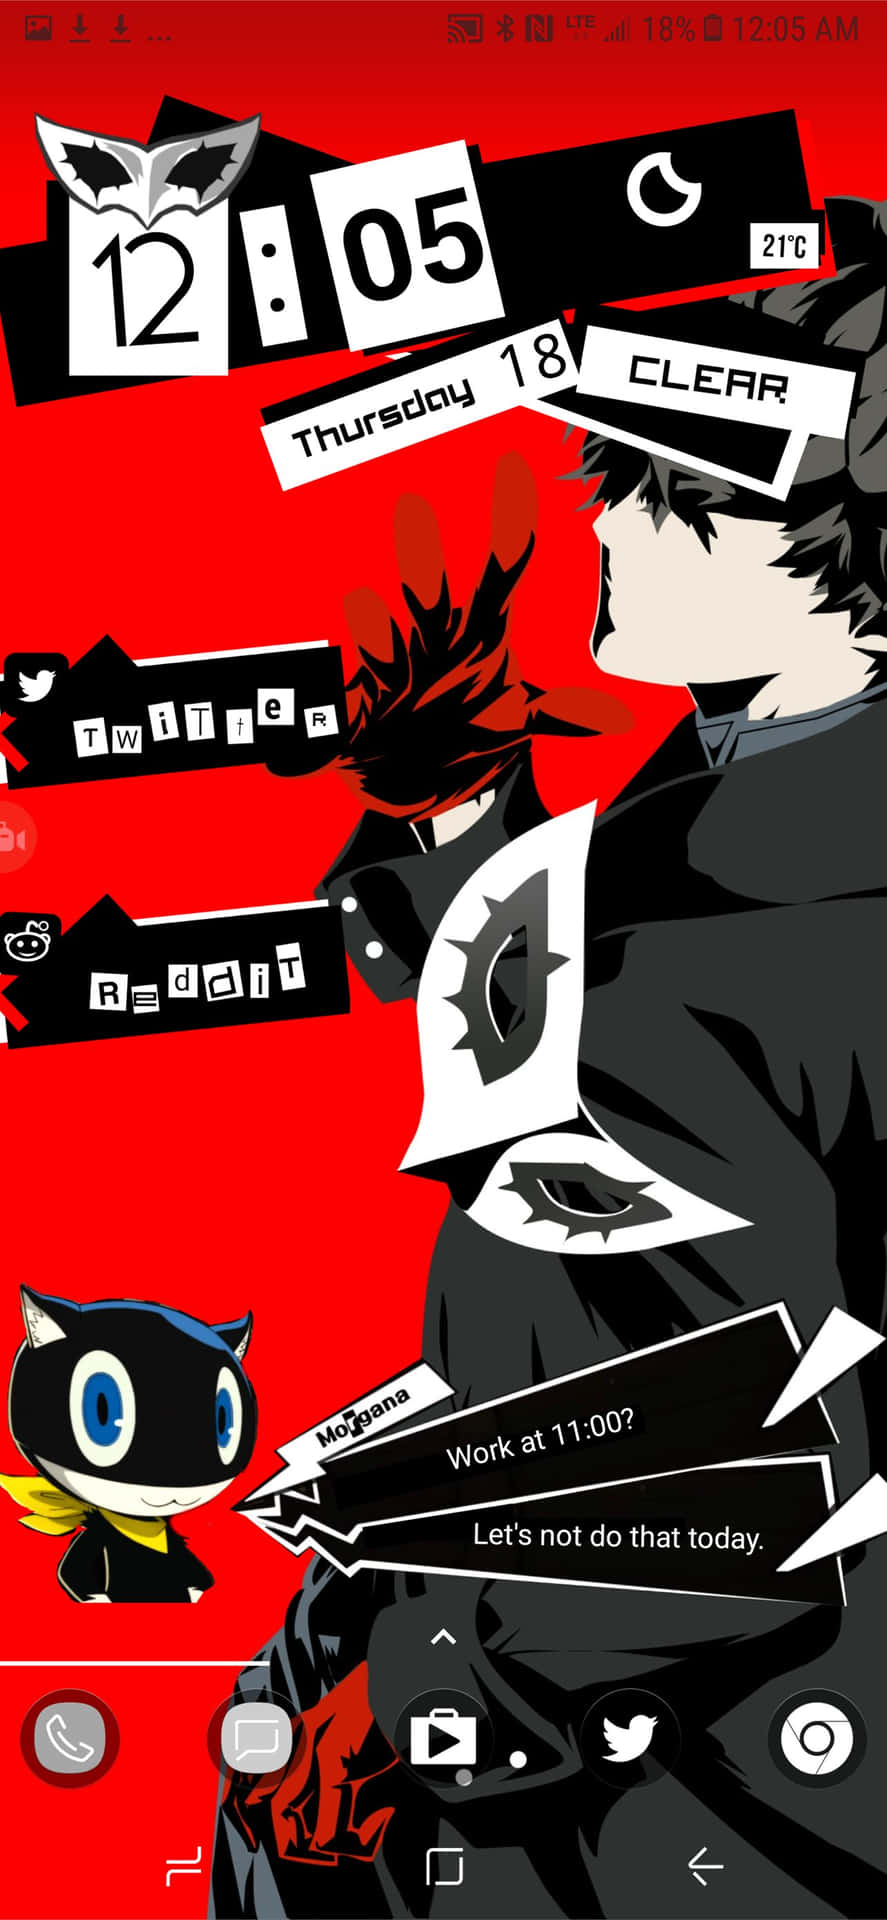 "Persona 5 Game Artwork as iPhone Wallpaper" Wallpaper